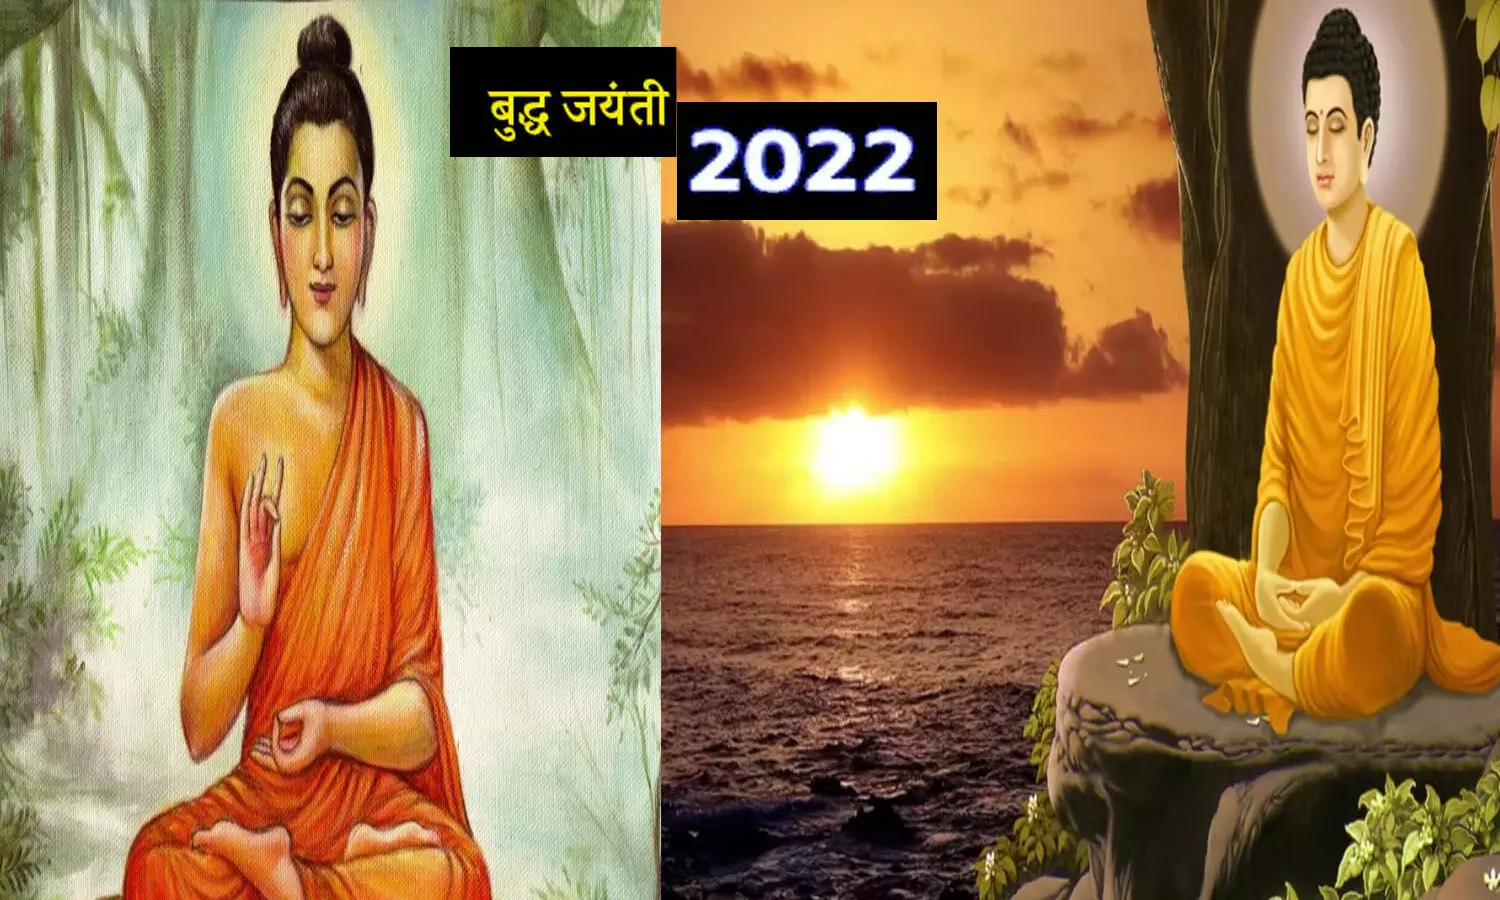 Buddha Jayanti 2022 Kab Hai